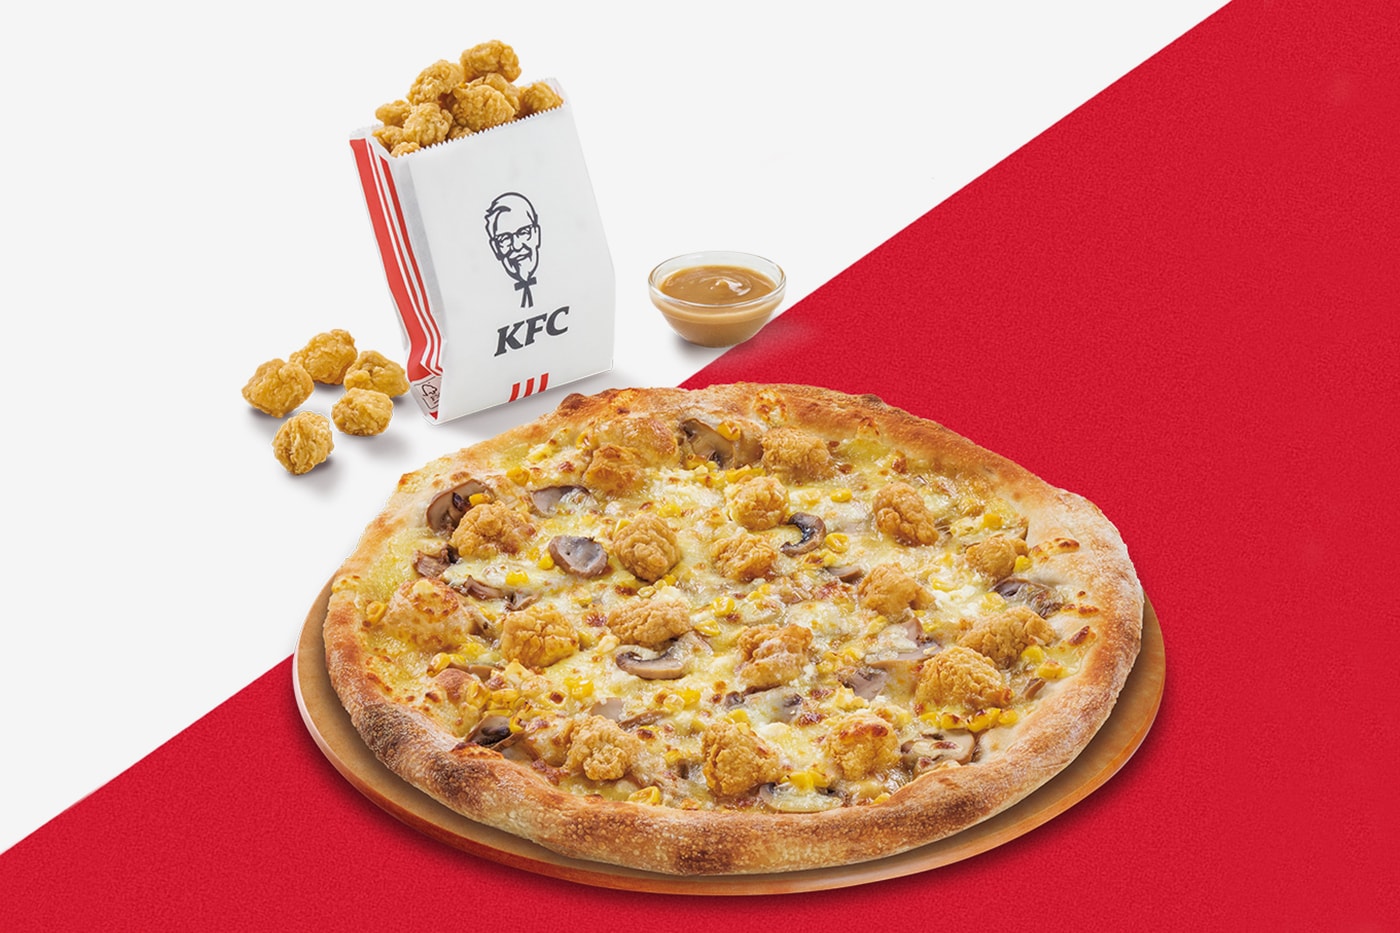 ピザハット x ケンタッキーからコラボピザが登場 Pizza Hut x KFC からコラボピザが登場 